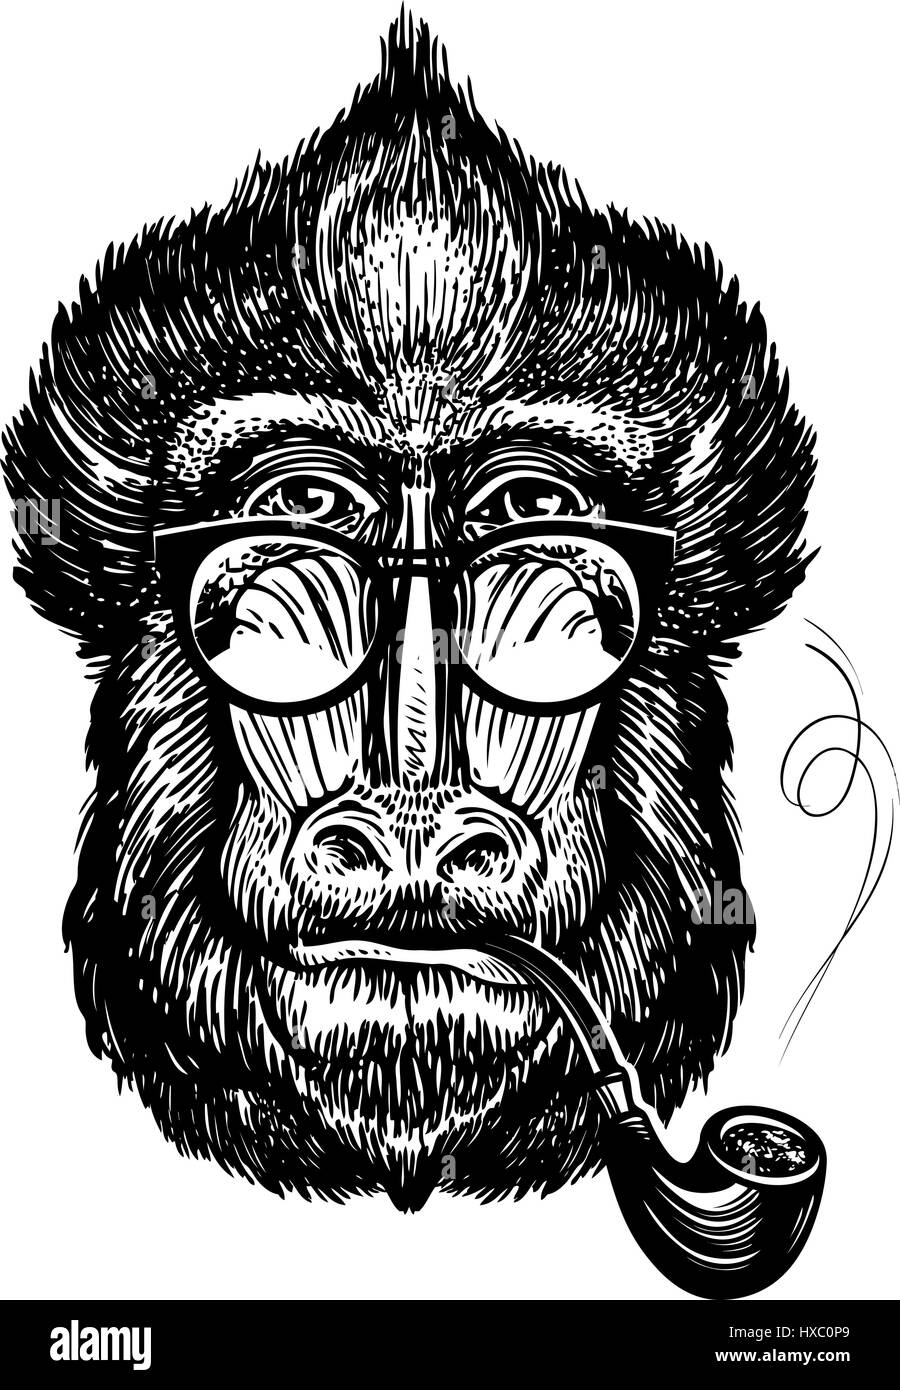 Handgezeichnete Portrait des lustigen Affen mit Brille. Intelligente Mandrill und Pfeife. Skizze-Vektor-illustration Stock Vektor